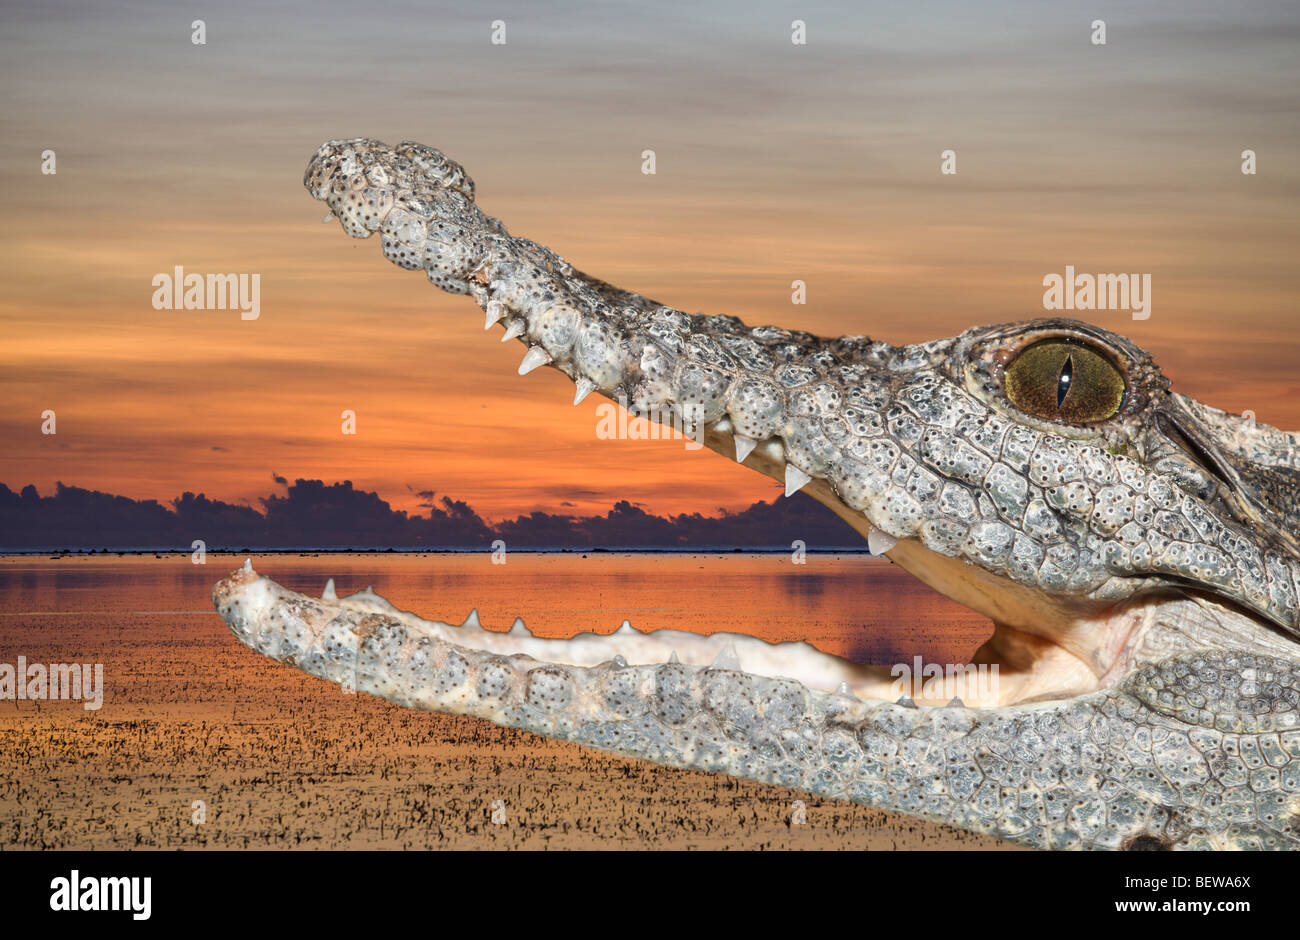 El cocodrilo del Nilo, Crocodylus niloticus, Asuán, Egipto Foto de stock